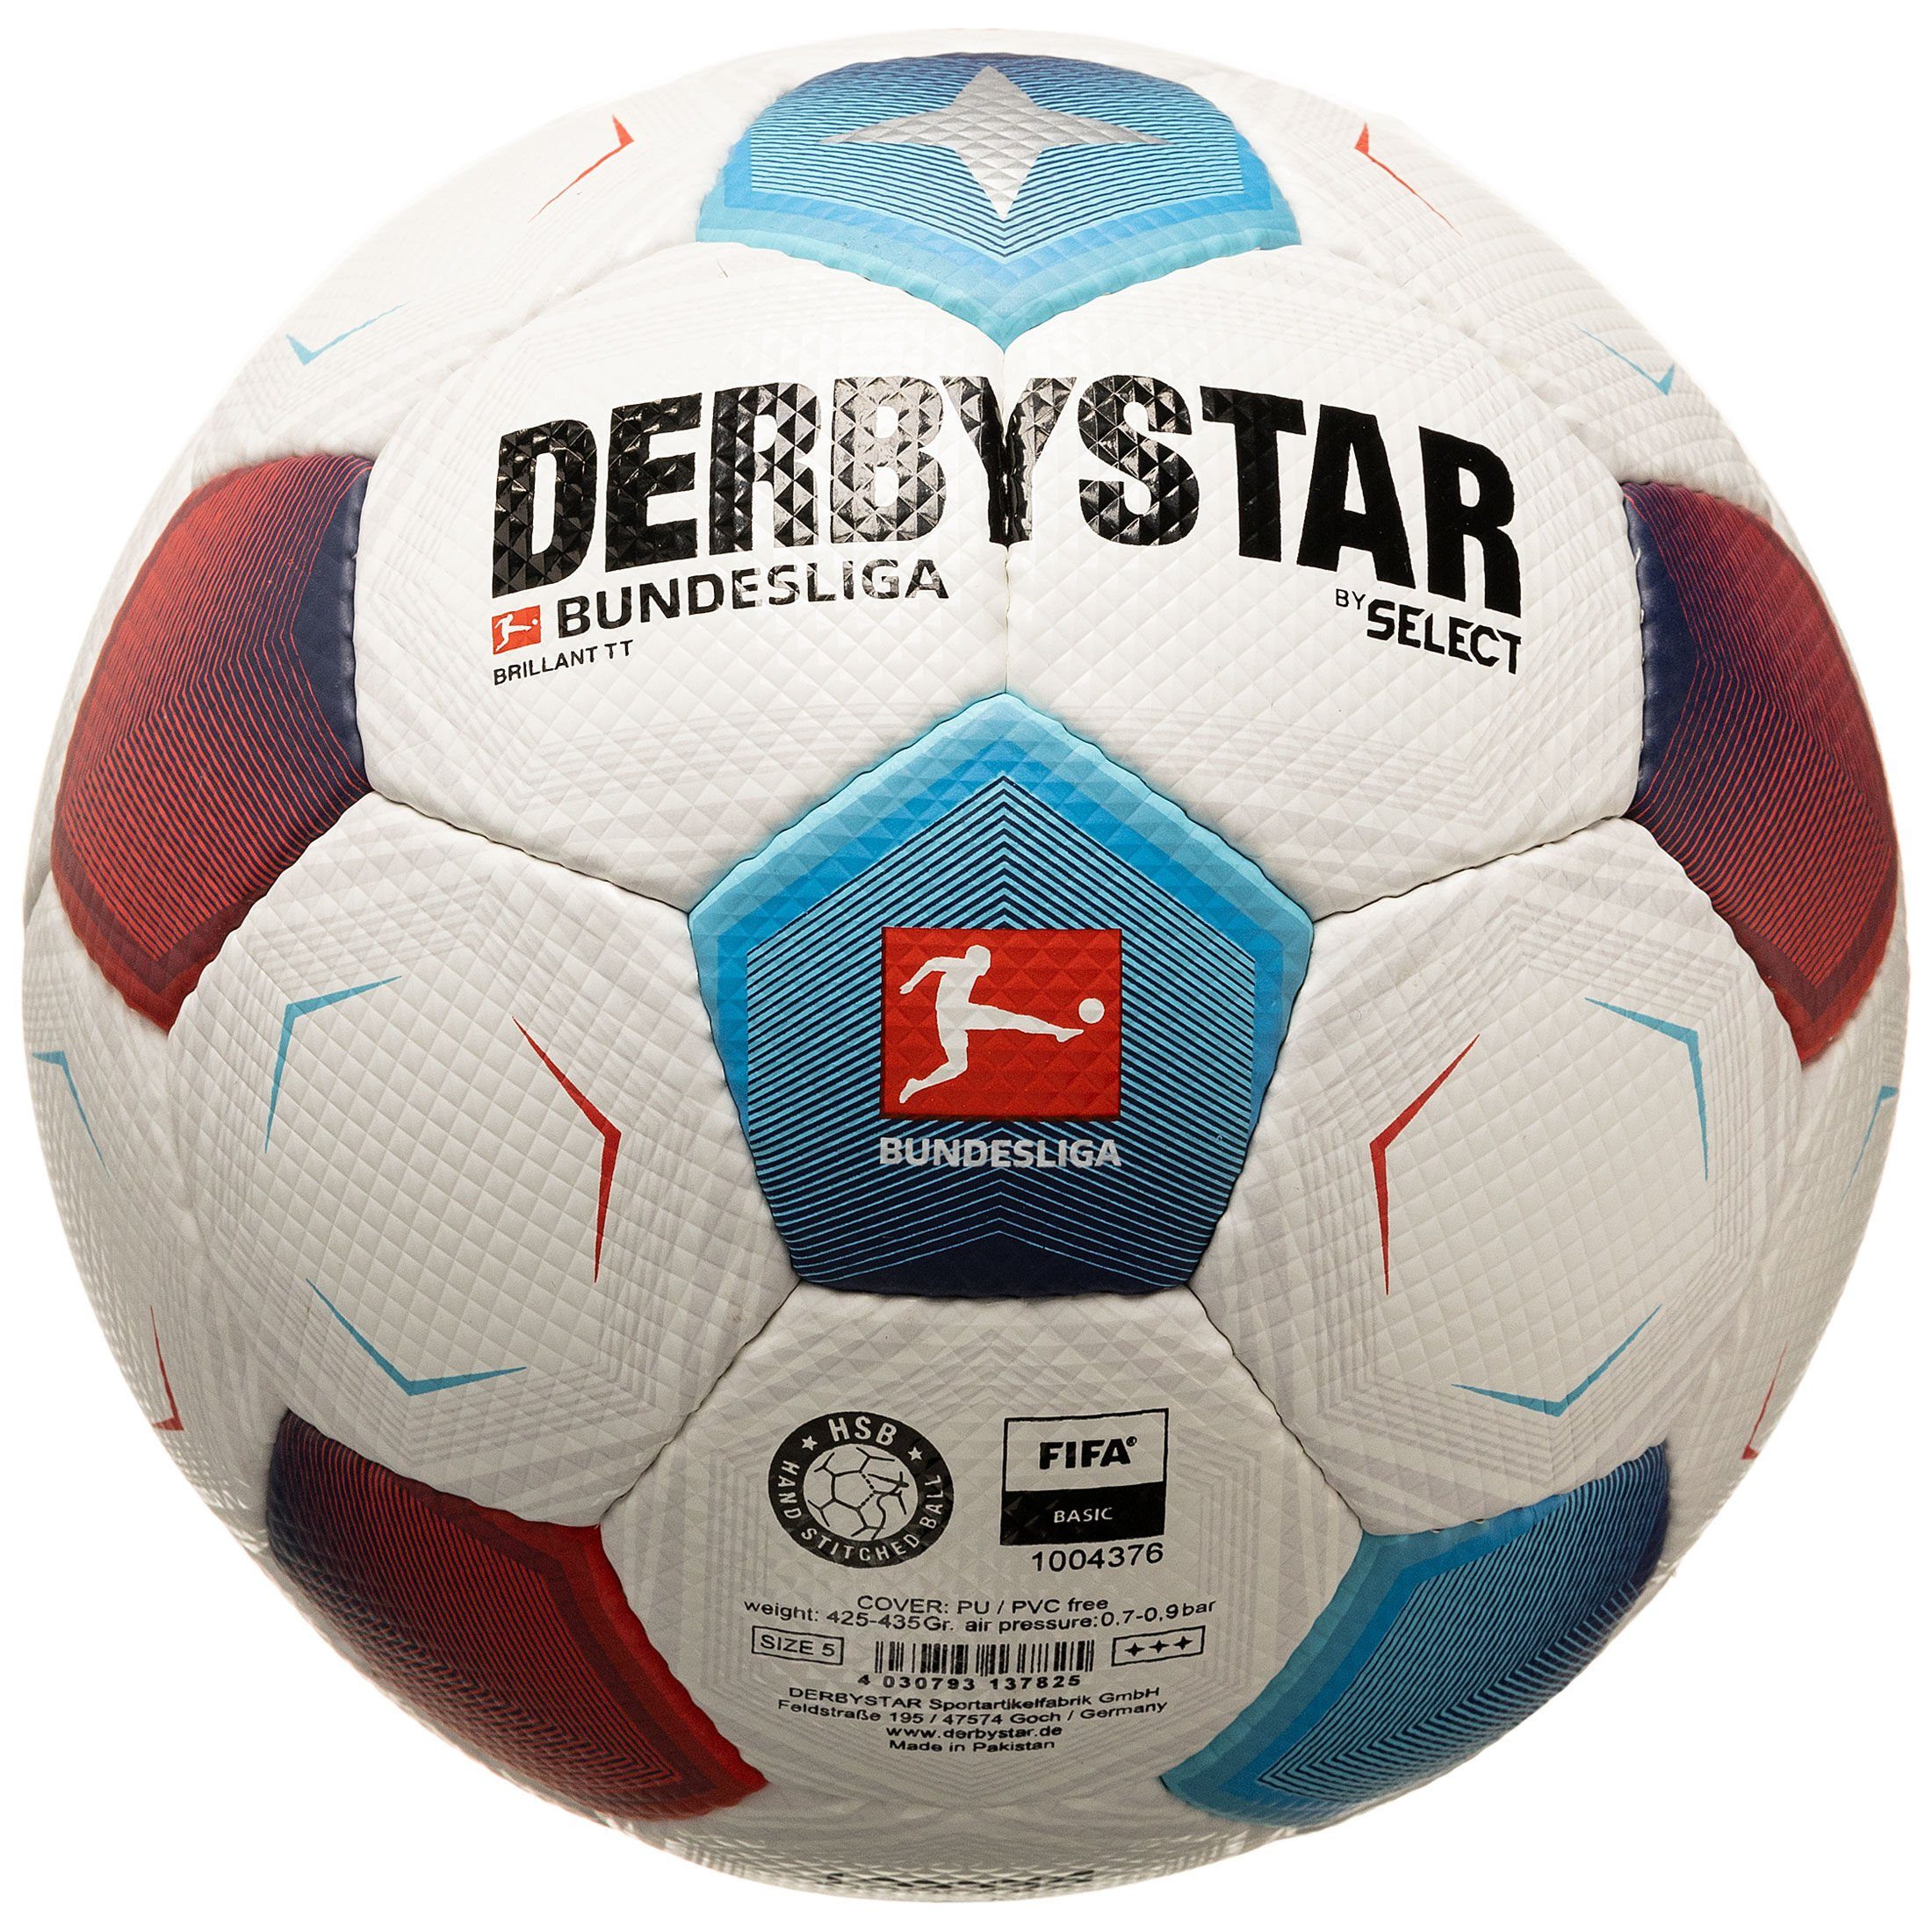 Derbystar Fußball Bundesliga Bundesliga v23 TT Fußball Brillant